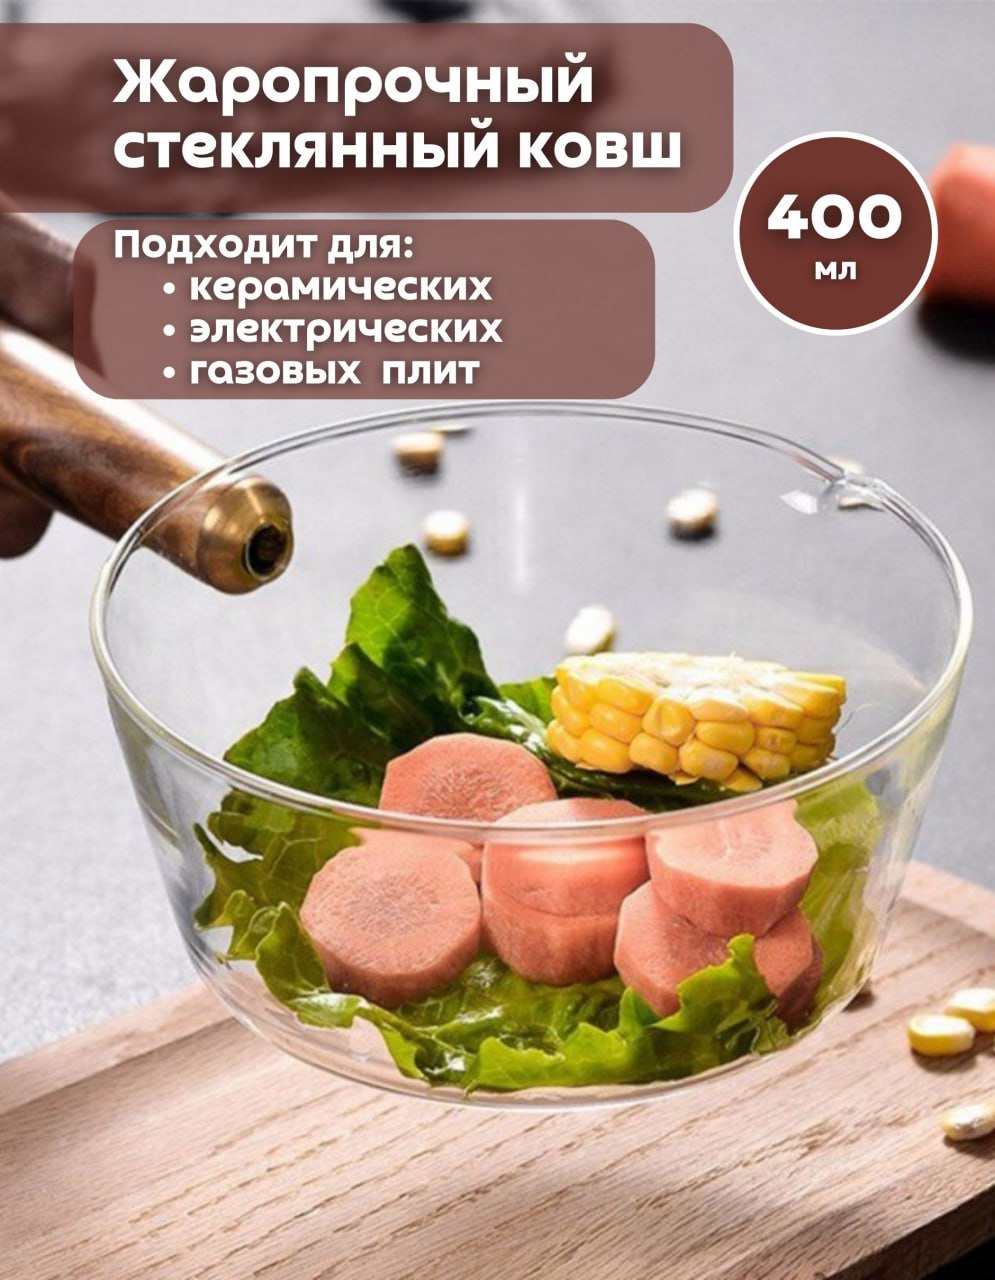 Ковш кухонный Паприка-Корица стеклянный с деревянной ручкой для плиты 400мл 300464/1